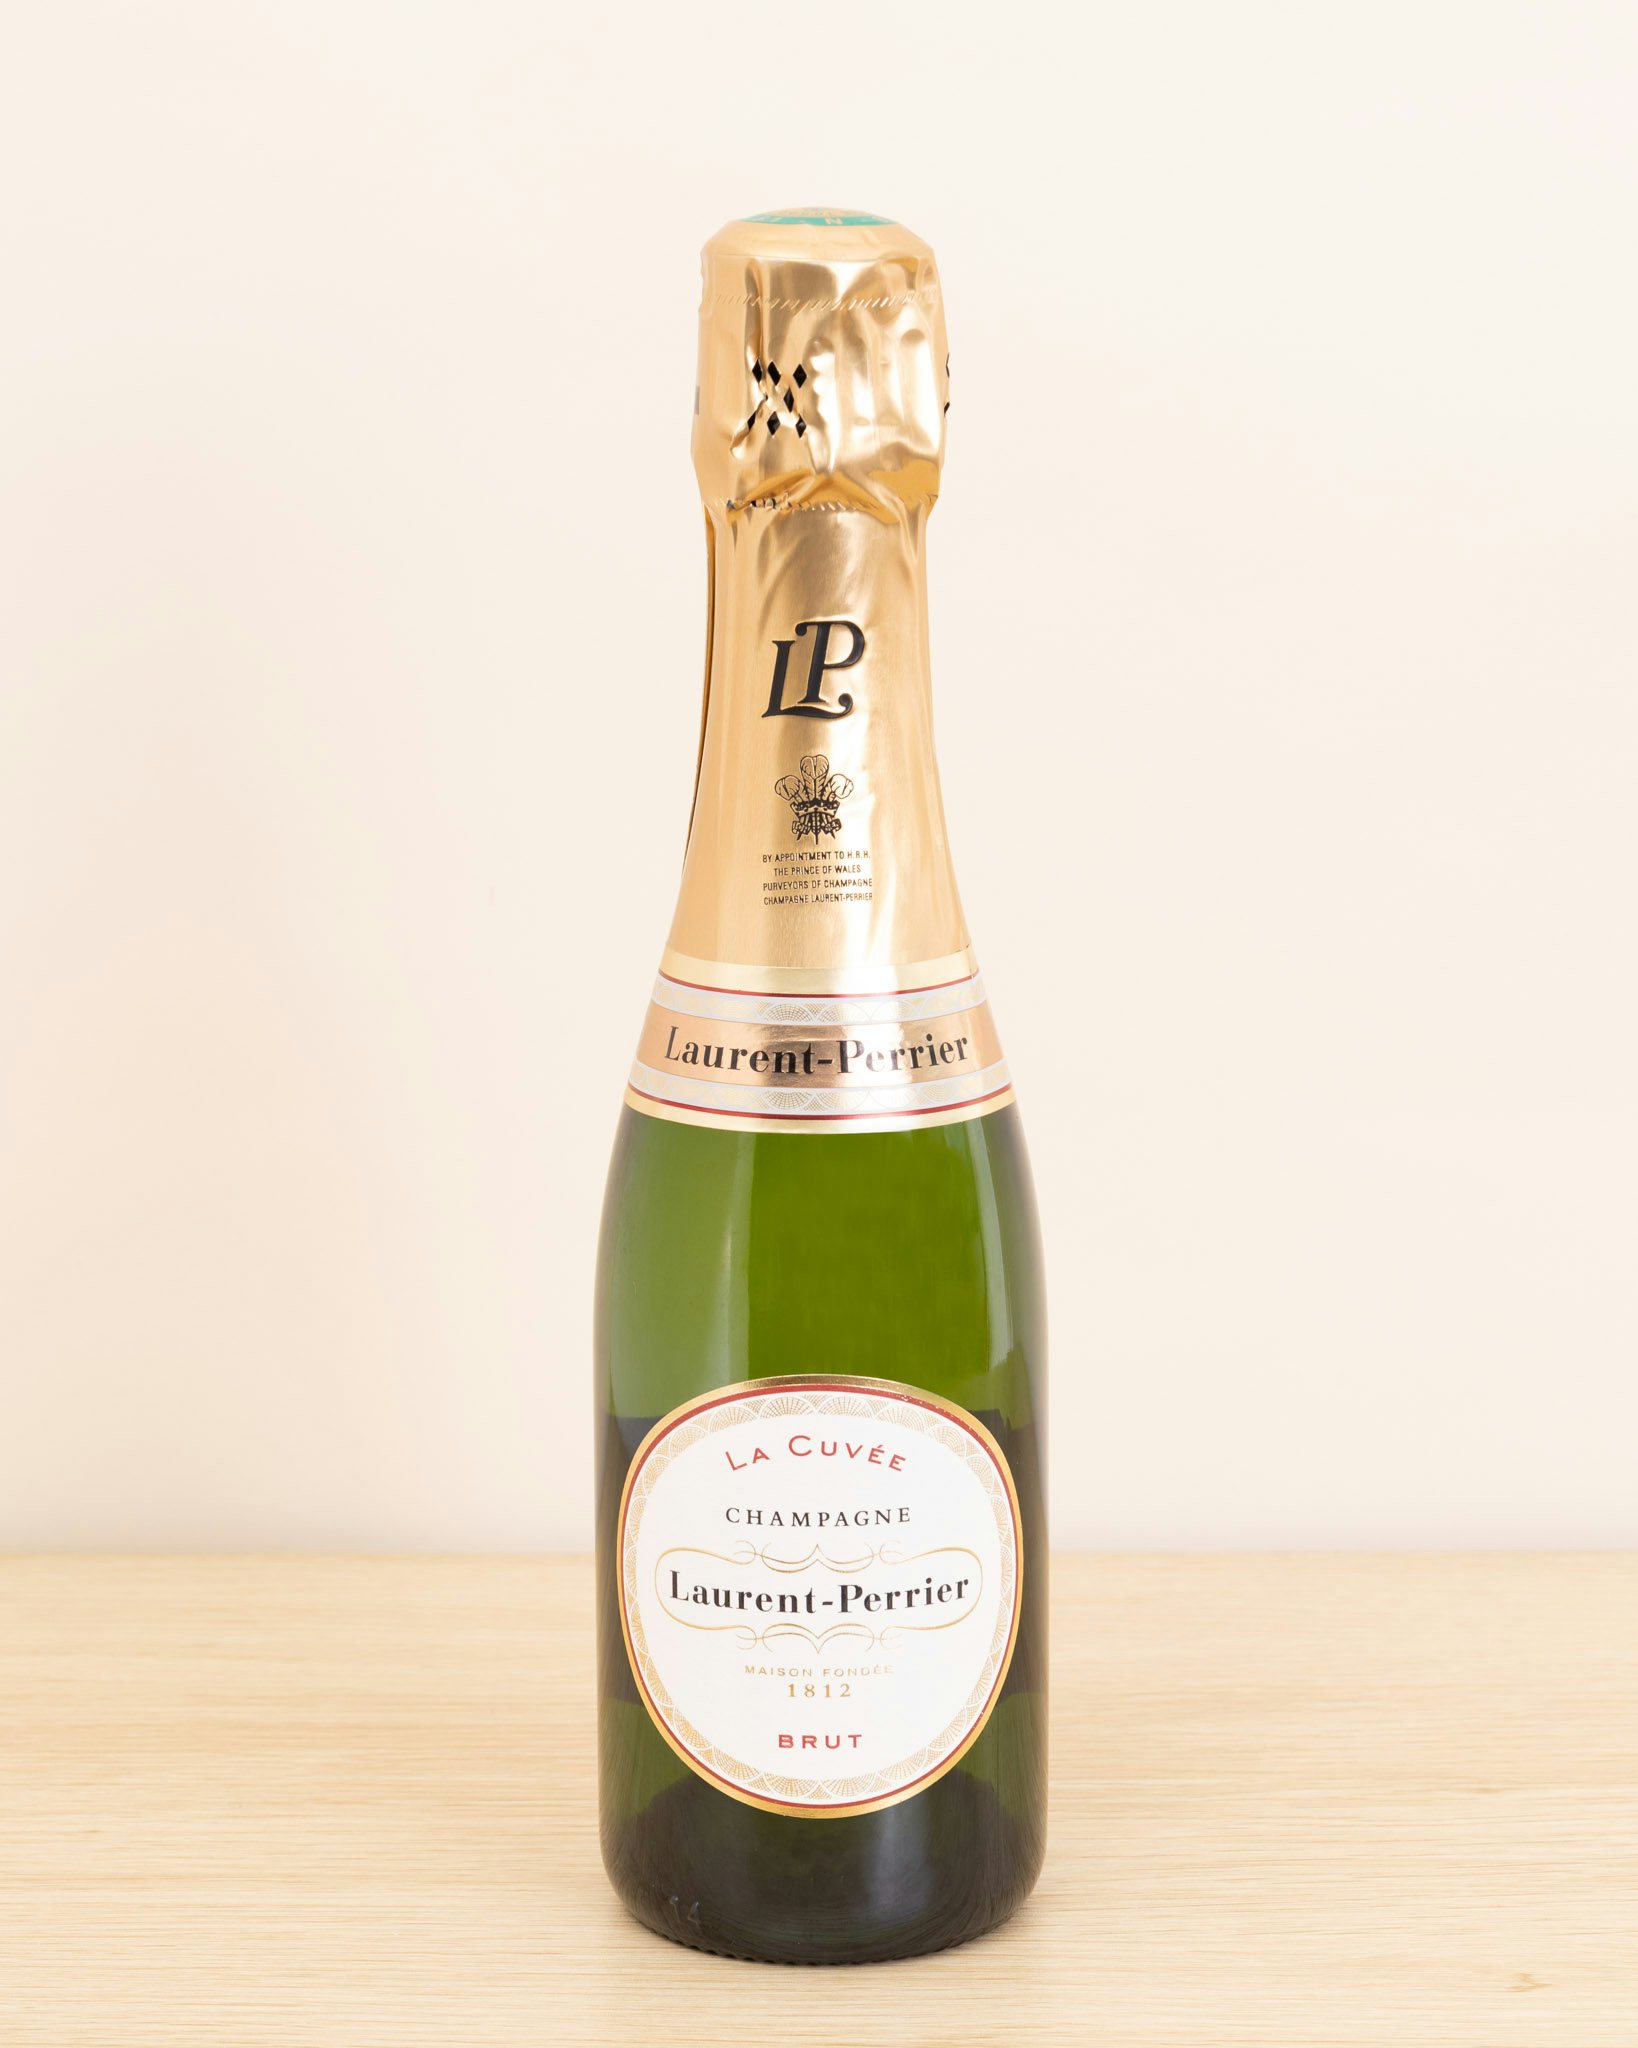 Demi bouteille de Champagne Laurent-Perrier